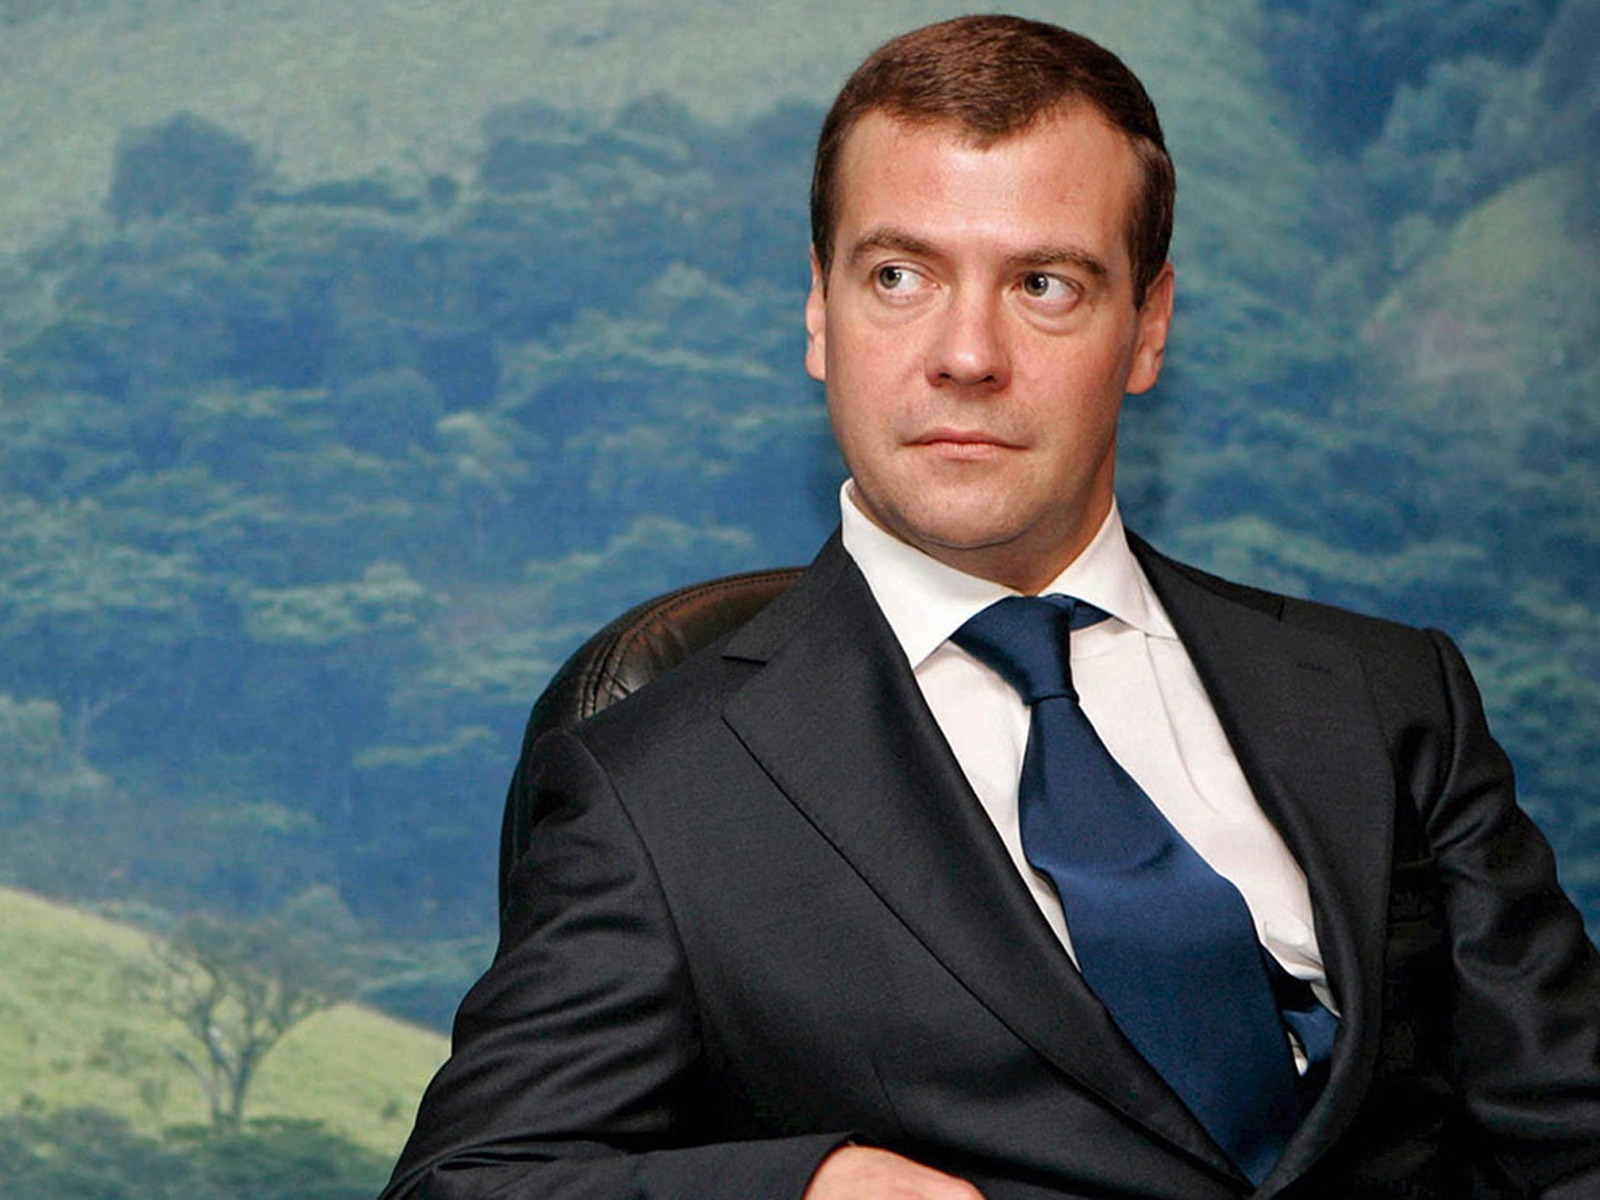 Dmitry Medvedev for 1600 x 1200 resolution